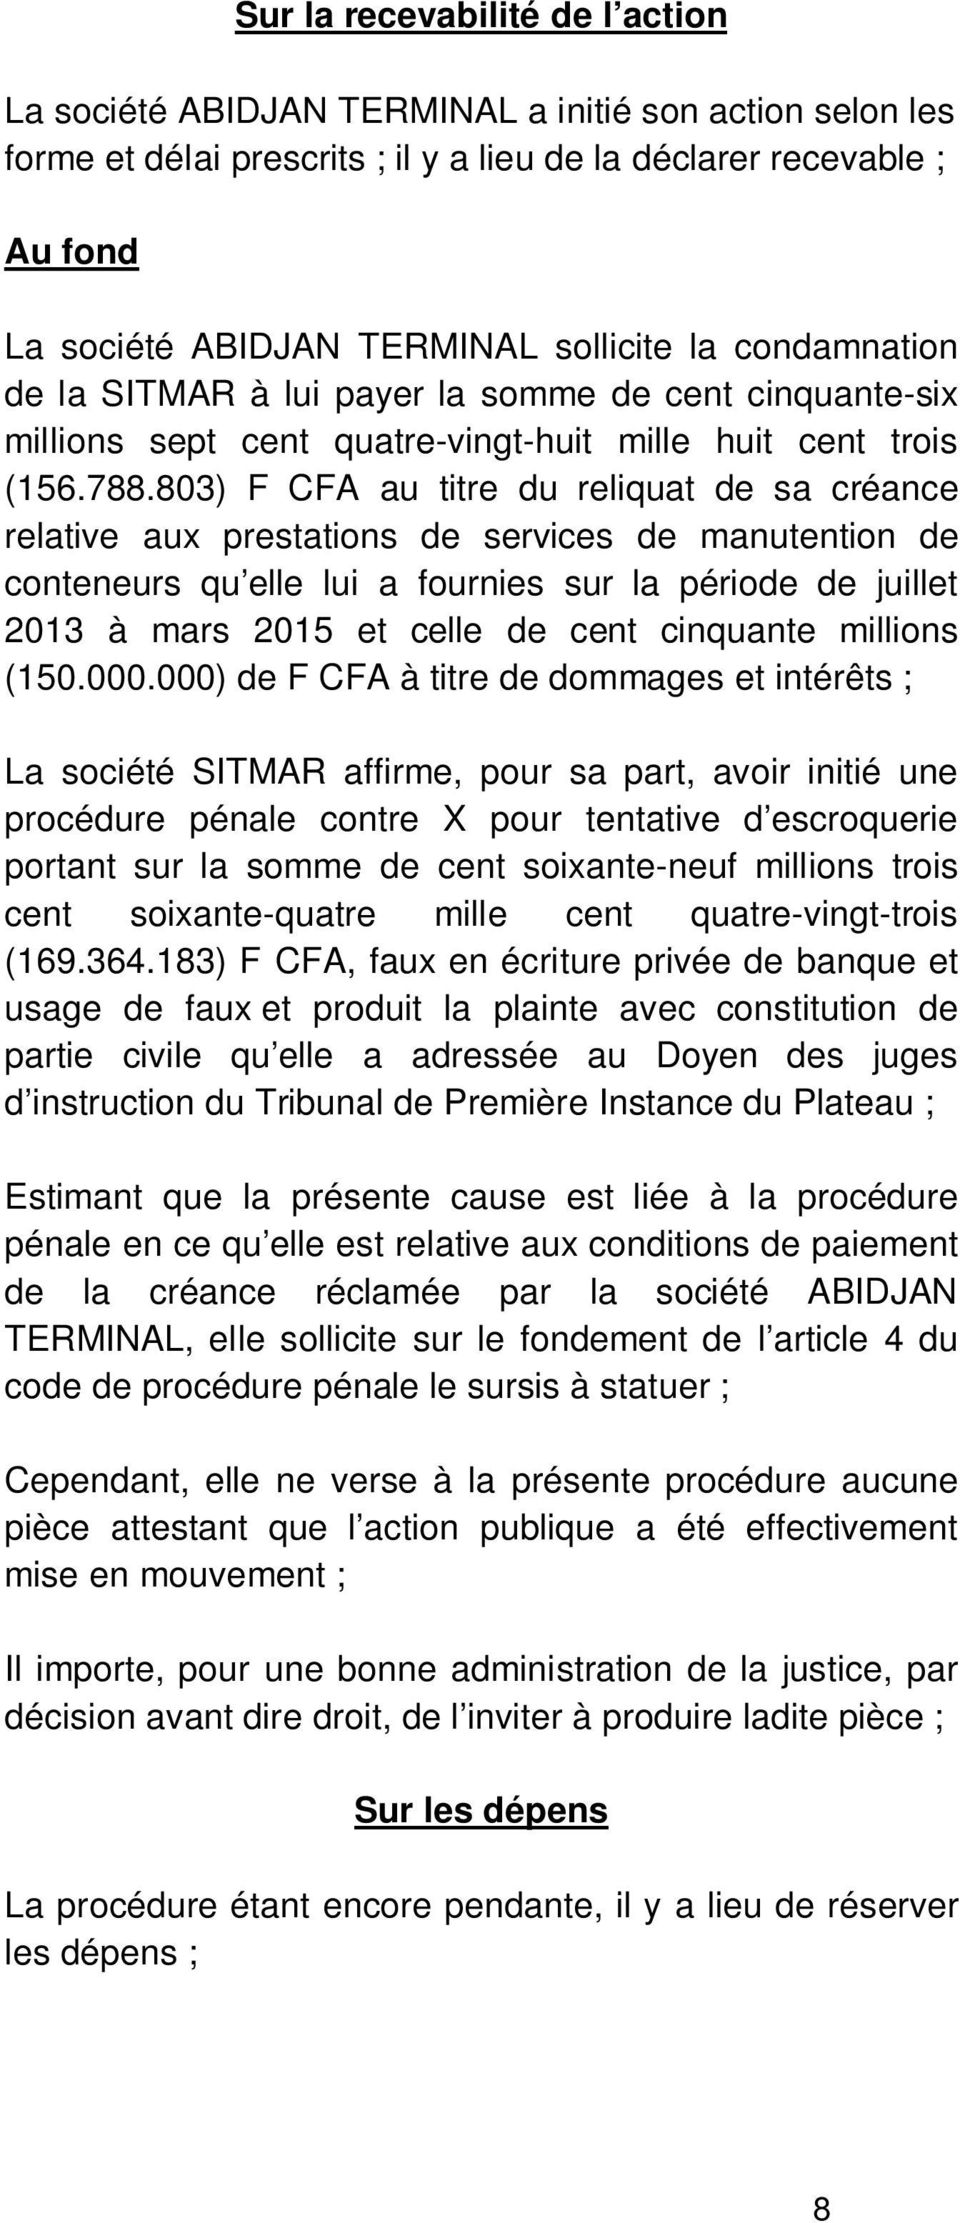 803) F CFA au titre du reliquat de sa créance relative aux prestations de services de manutention de conteneurs qu elle lui a fournies sur la période de juillet 2013 à mars 2015 et celle de cent